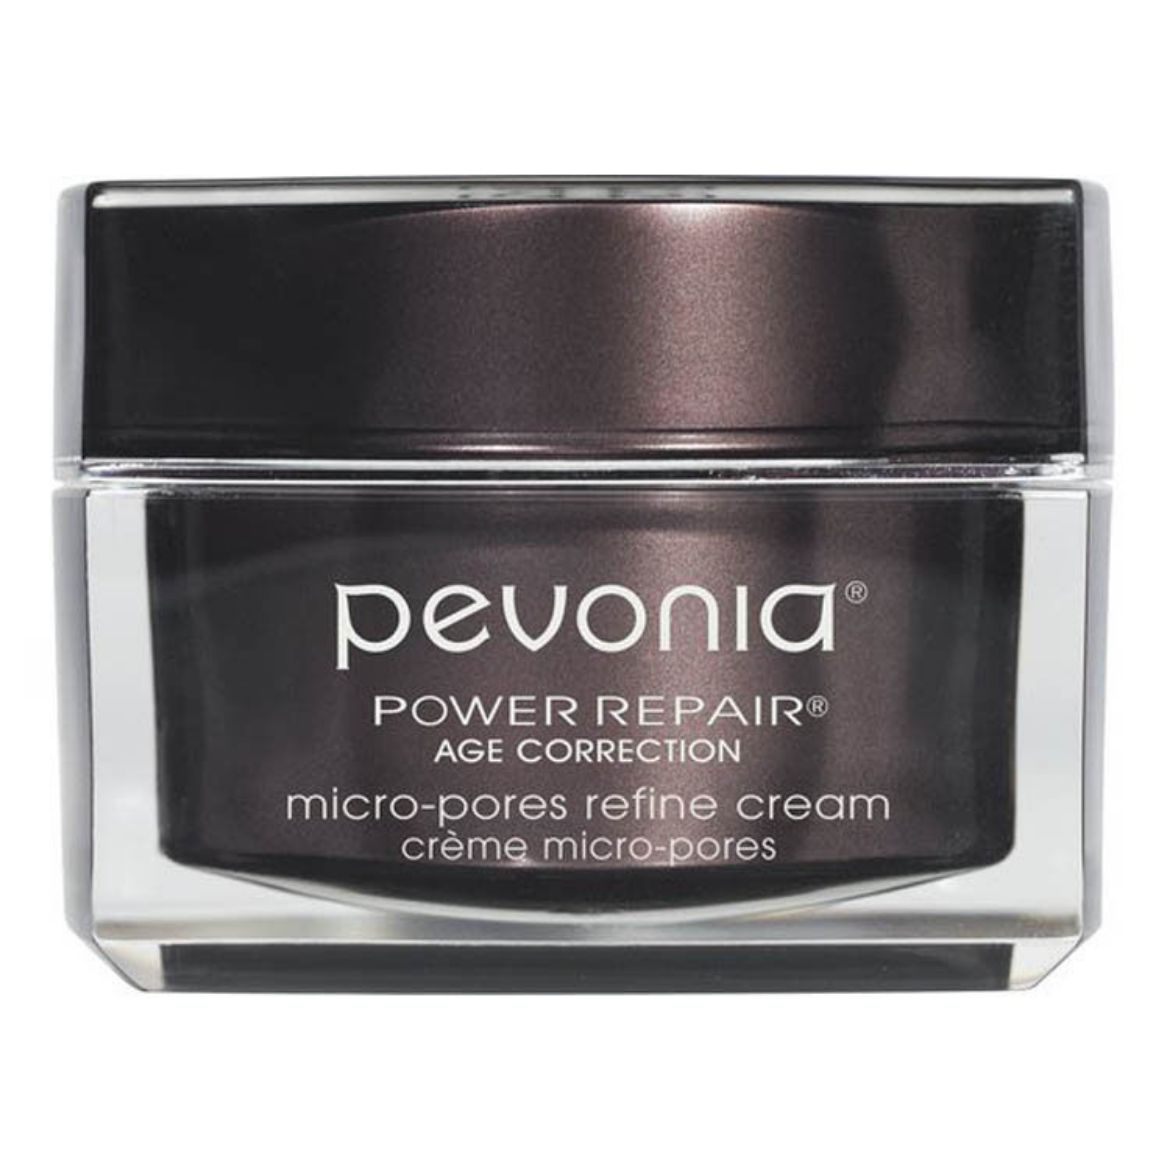 Immagine di Pevonia Power Repair Micro-Pores Refine Cream (50ml)